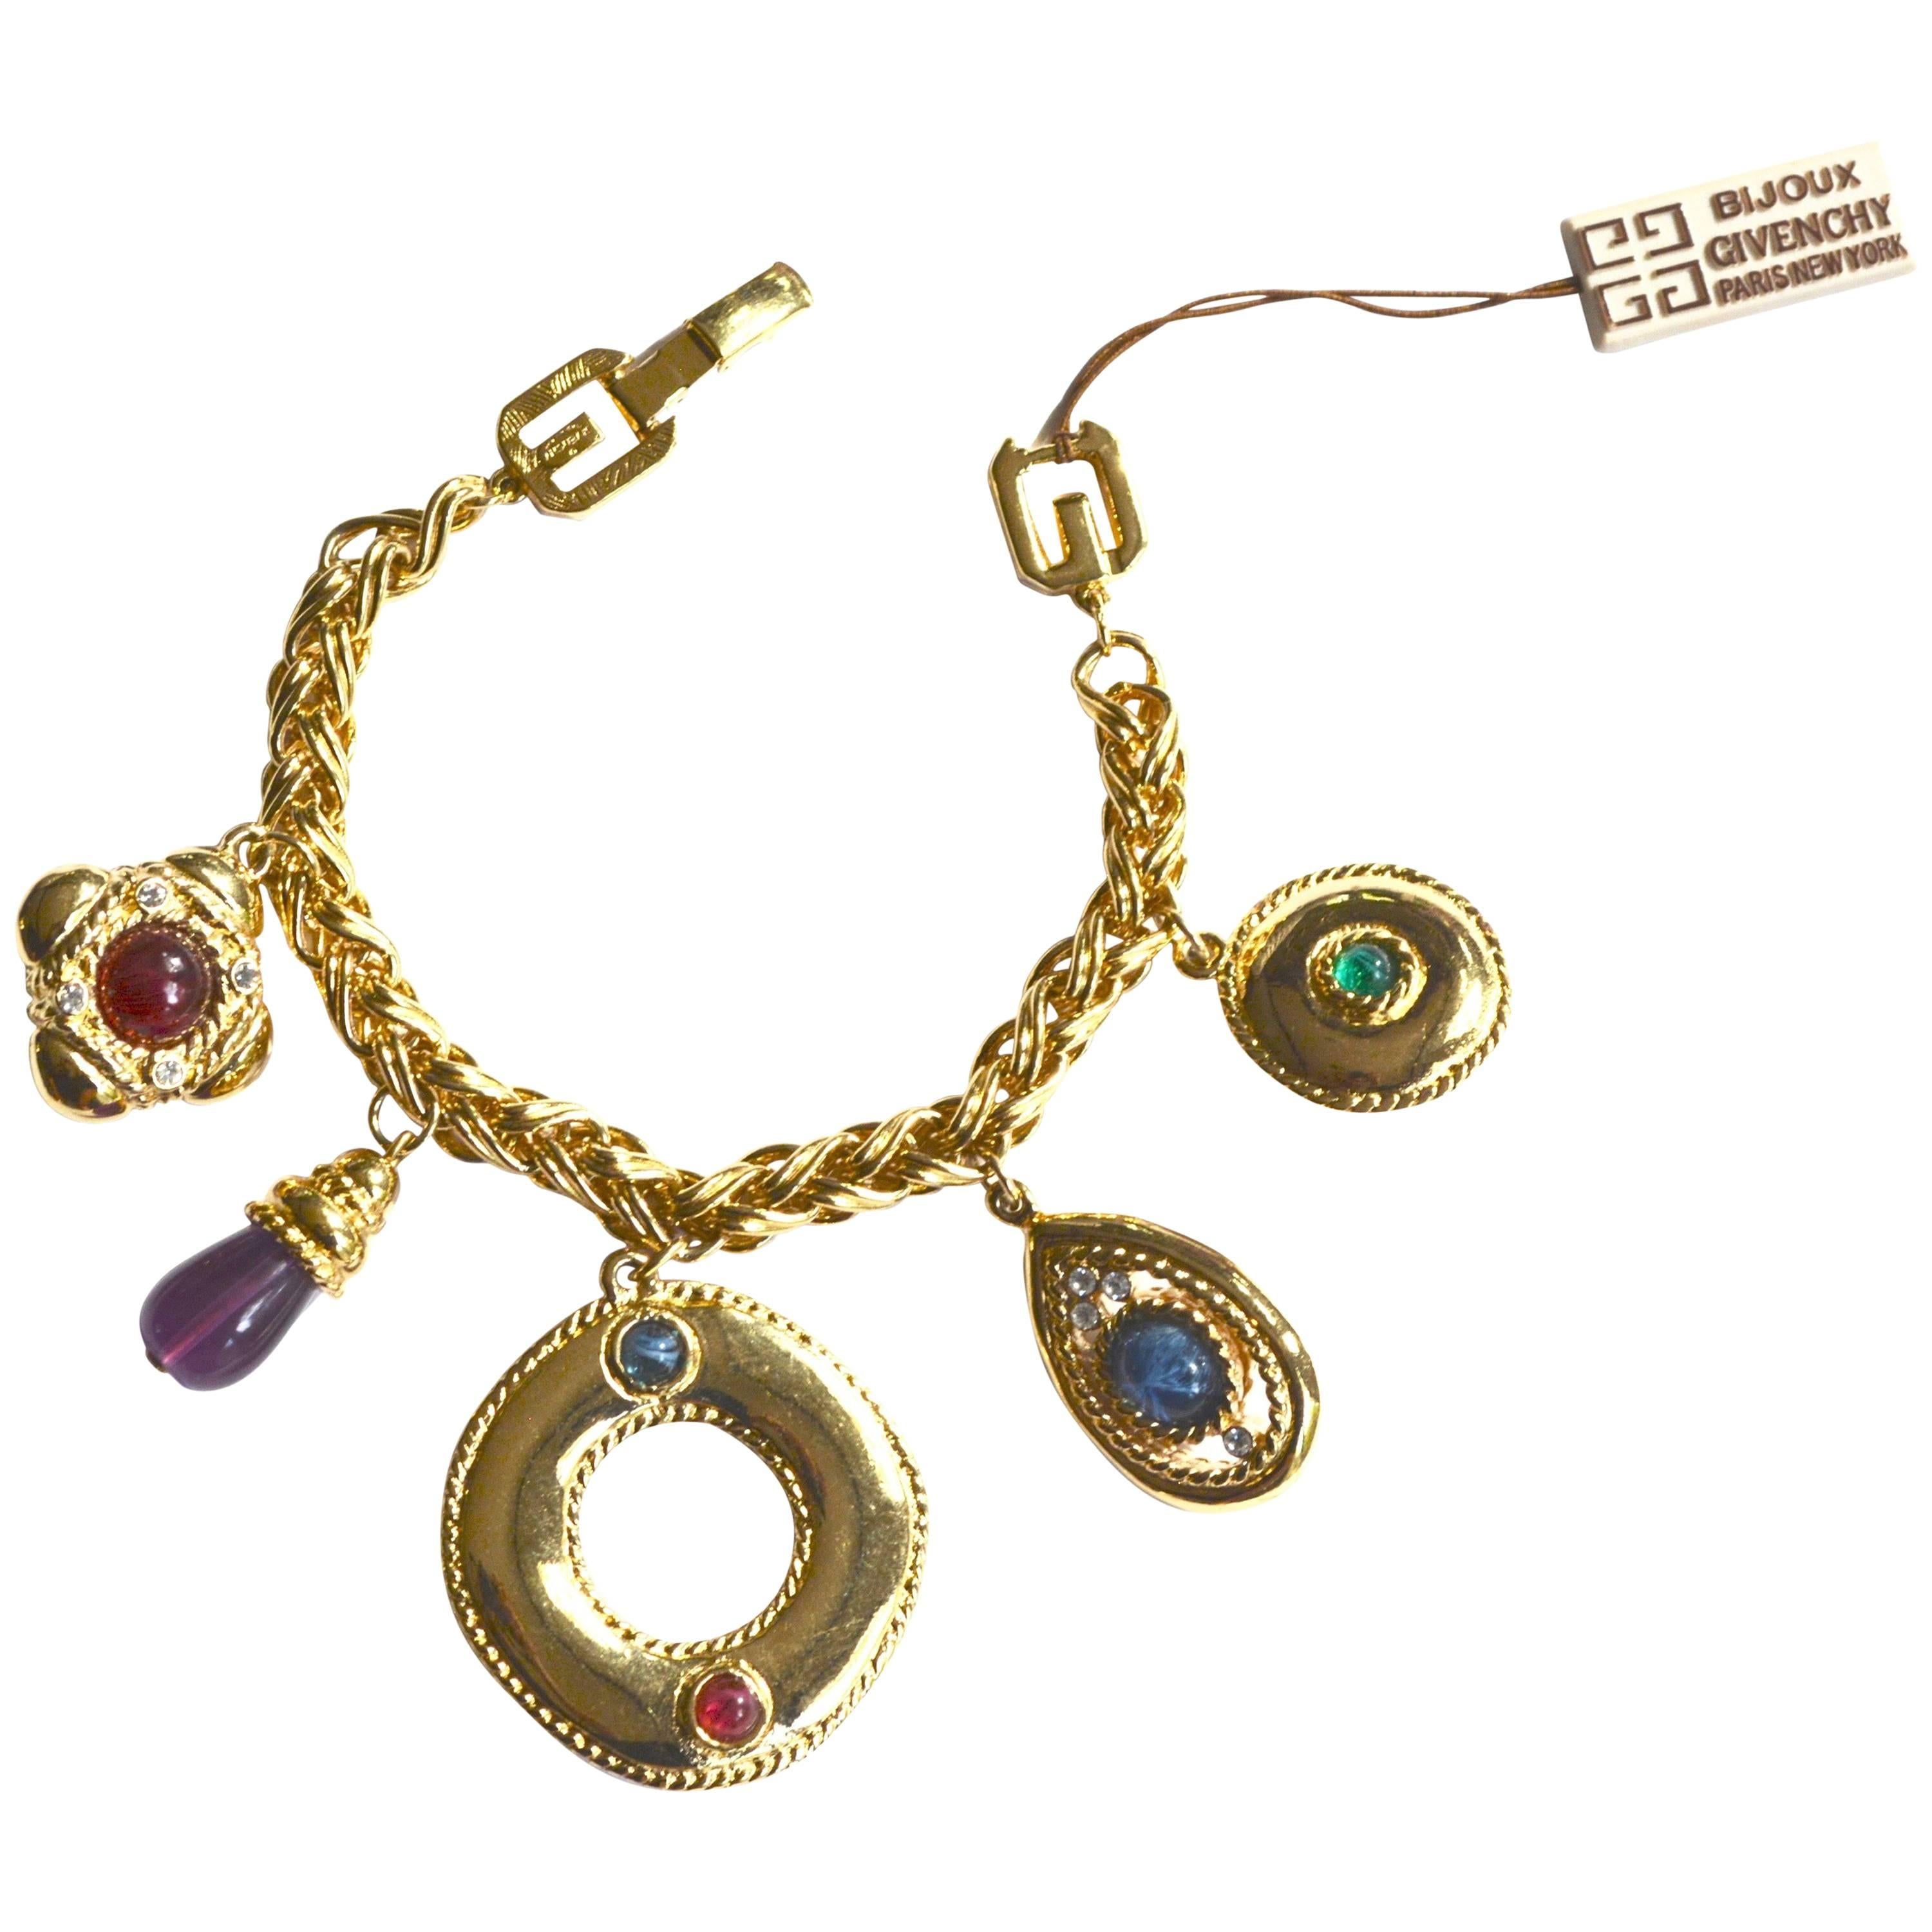 80s Givenchy Charm Bracelet